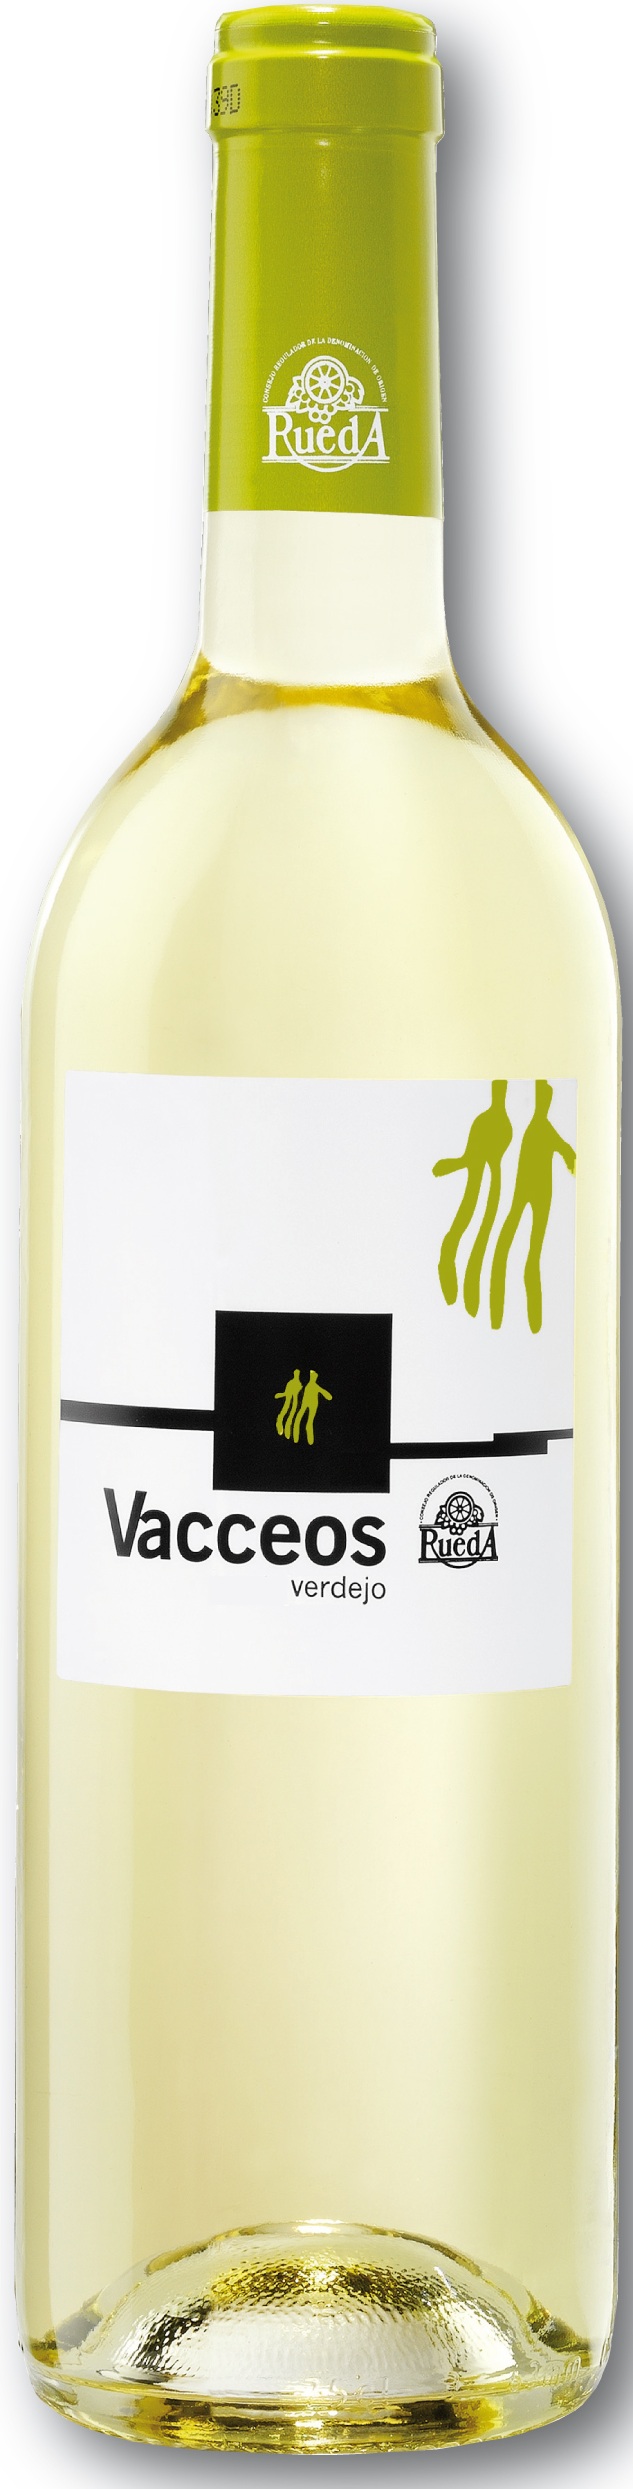 Bild von der Weinflasche Vacceos Verdejo